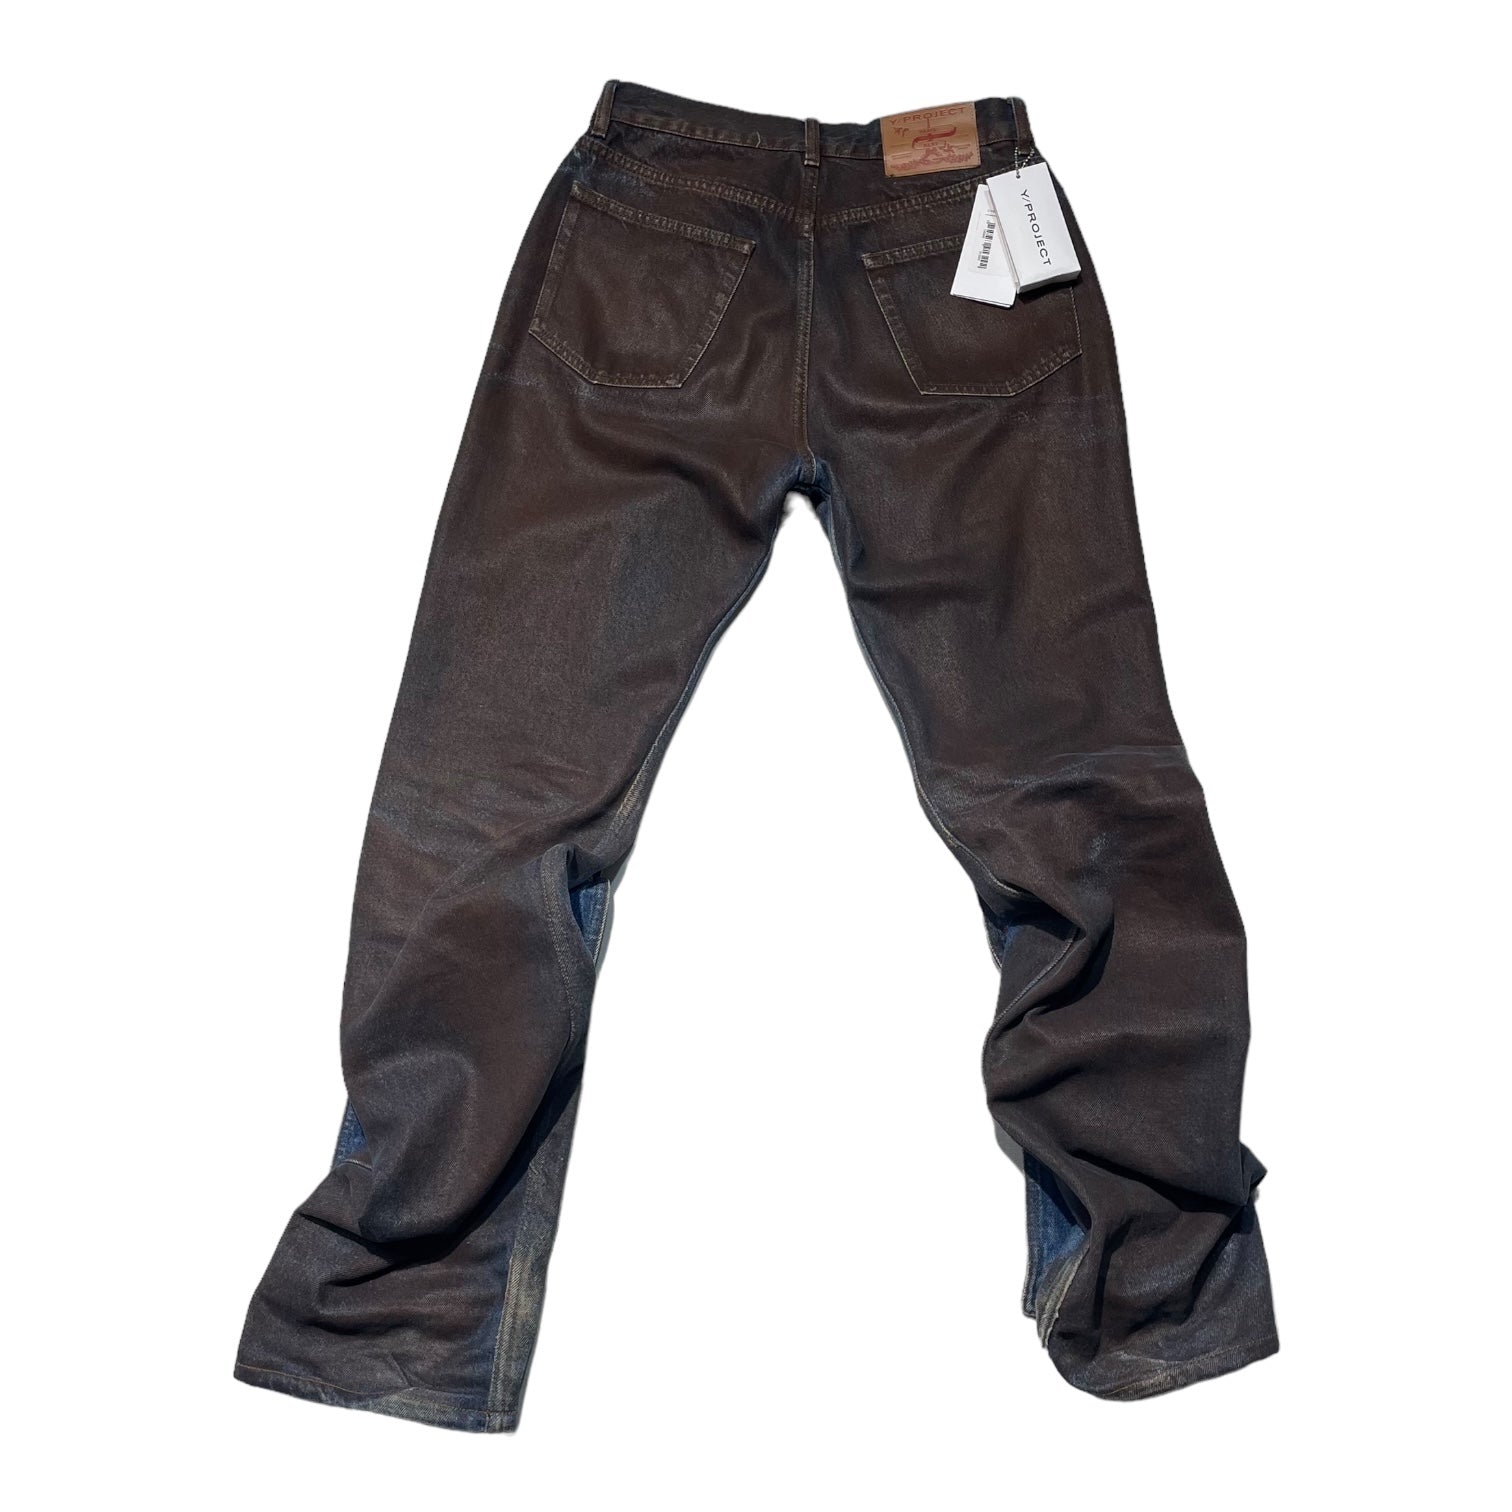 Y/Project(ワイプロジェクト) 21AW button panel jeans ボタン パネル デニム パンツ JEAN32-S21 W29  ブラウン×インディゴ ペンキ加工 ギミック　FW21